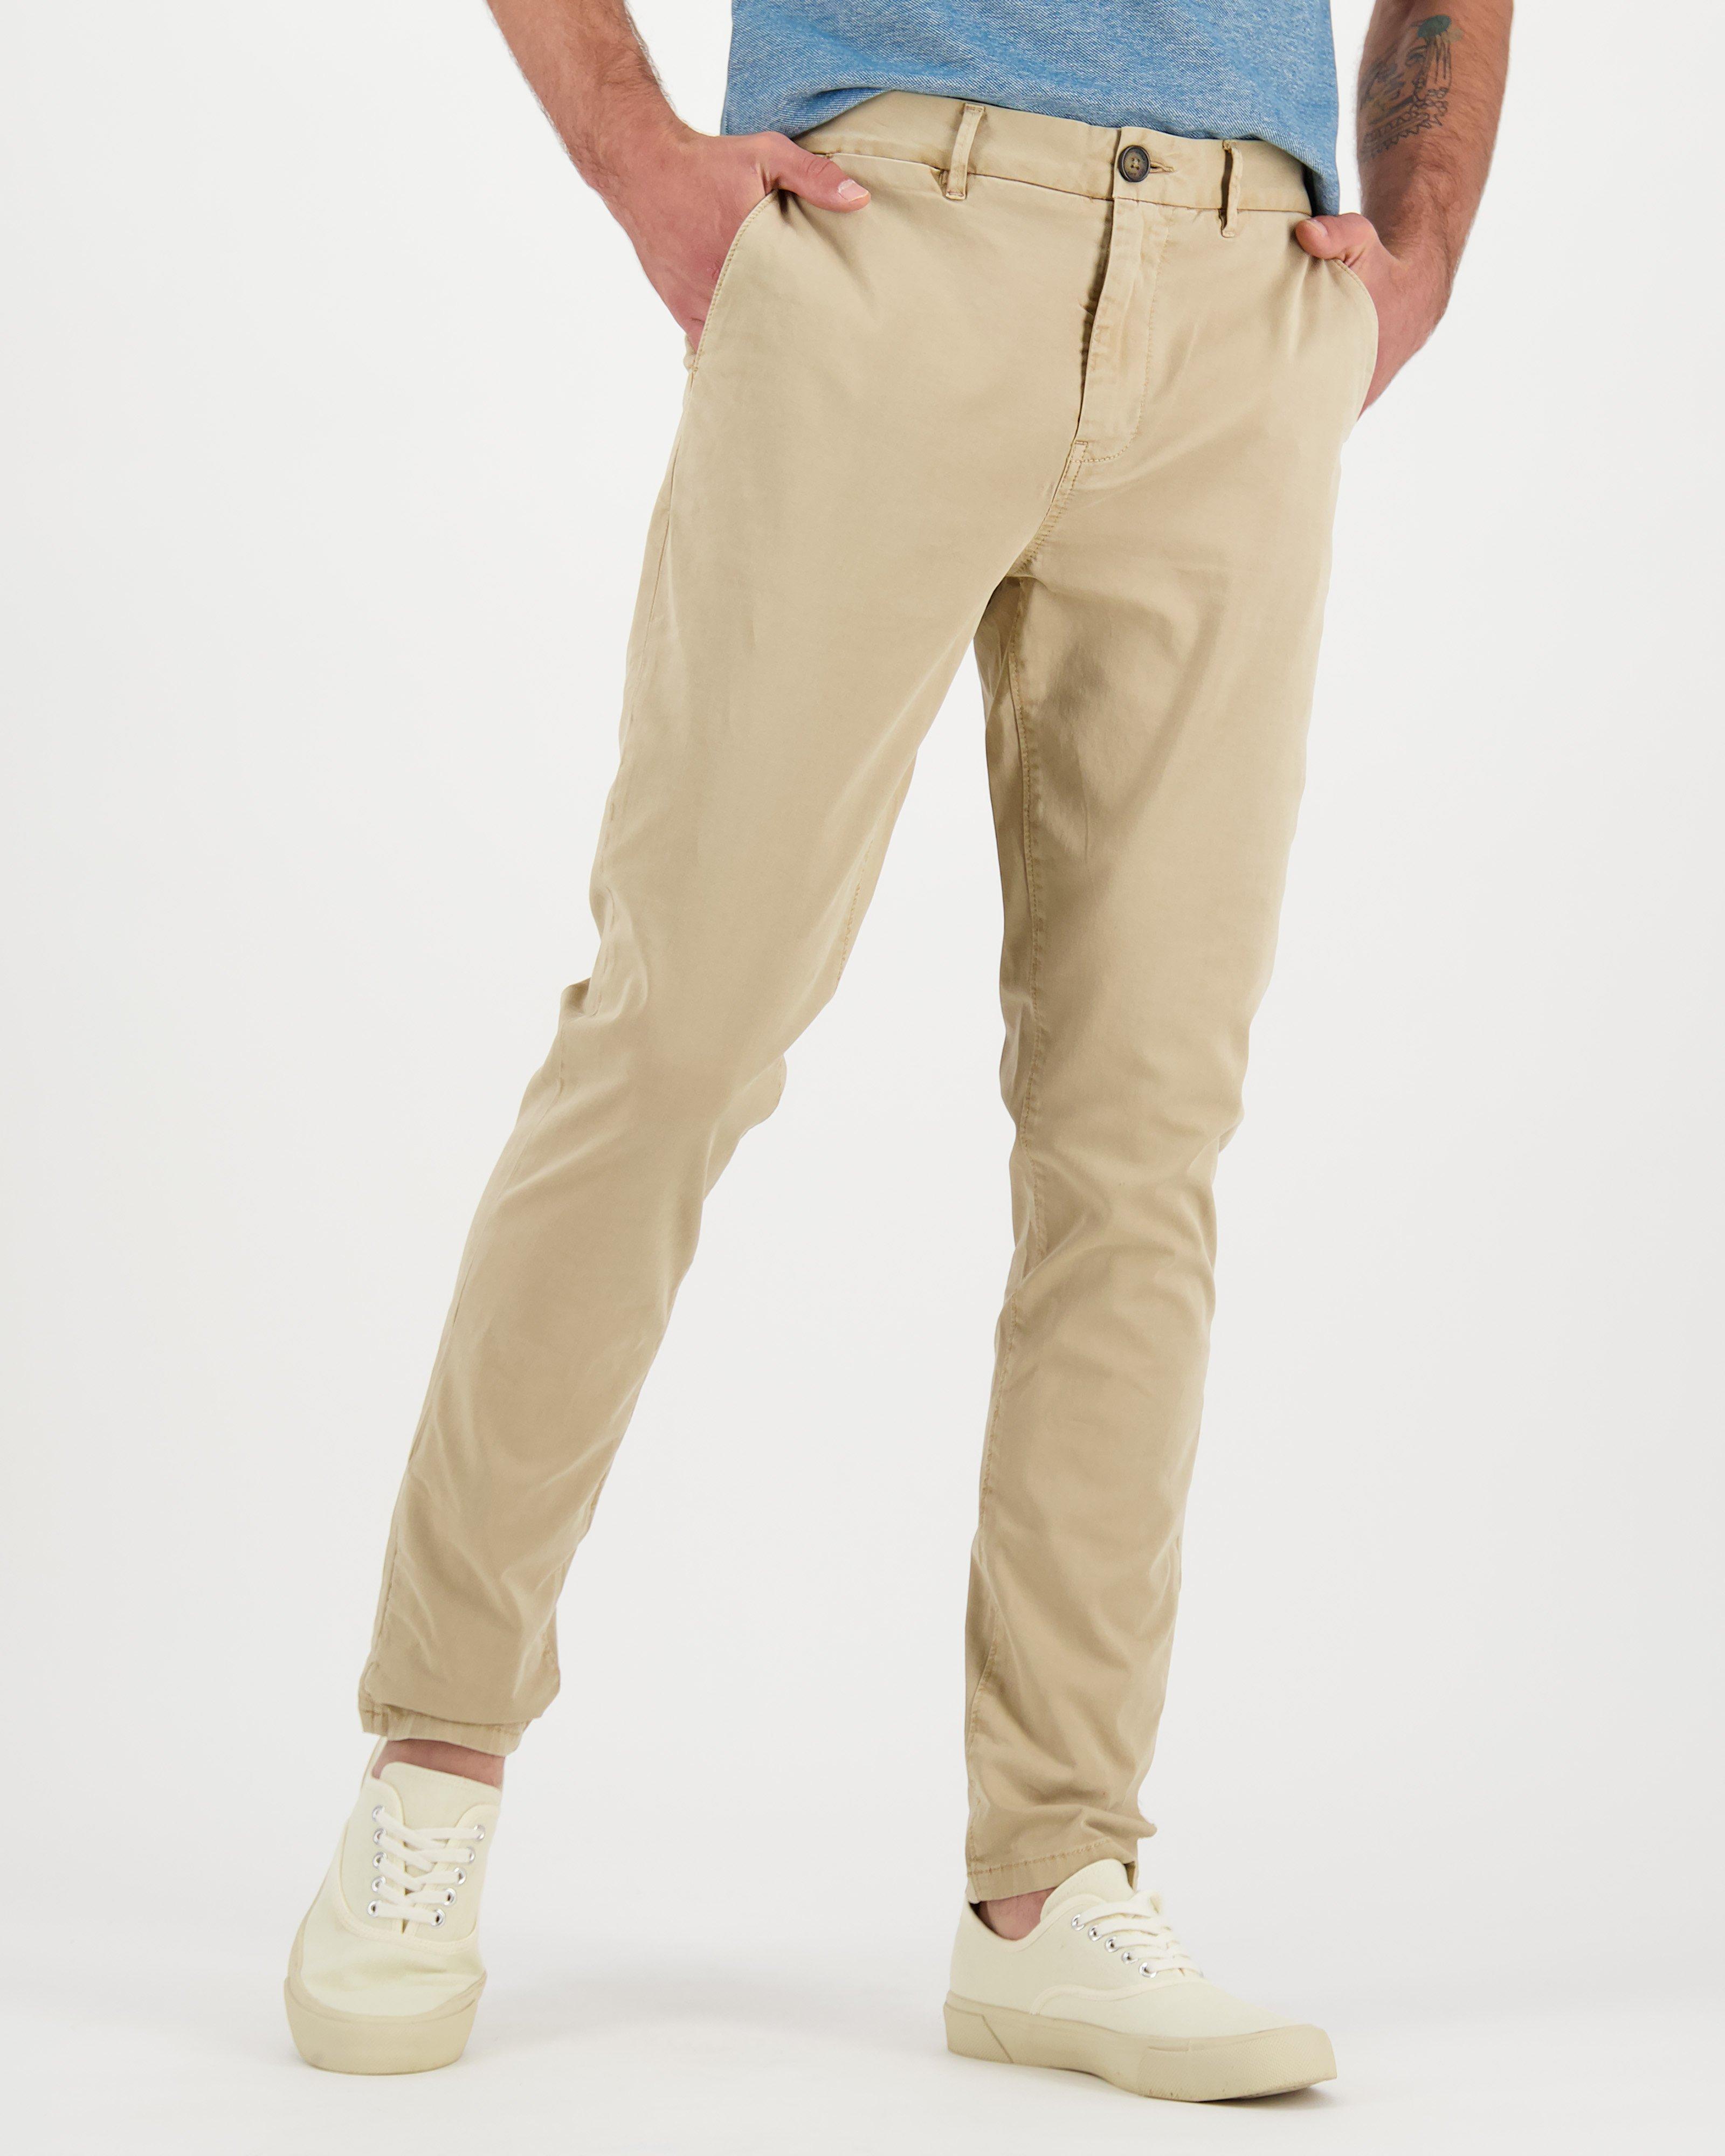 Kiro 1 Pants Mens | Old Khaki